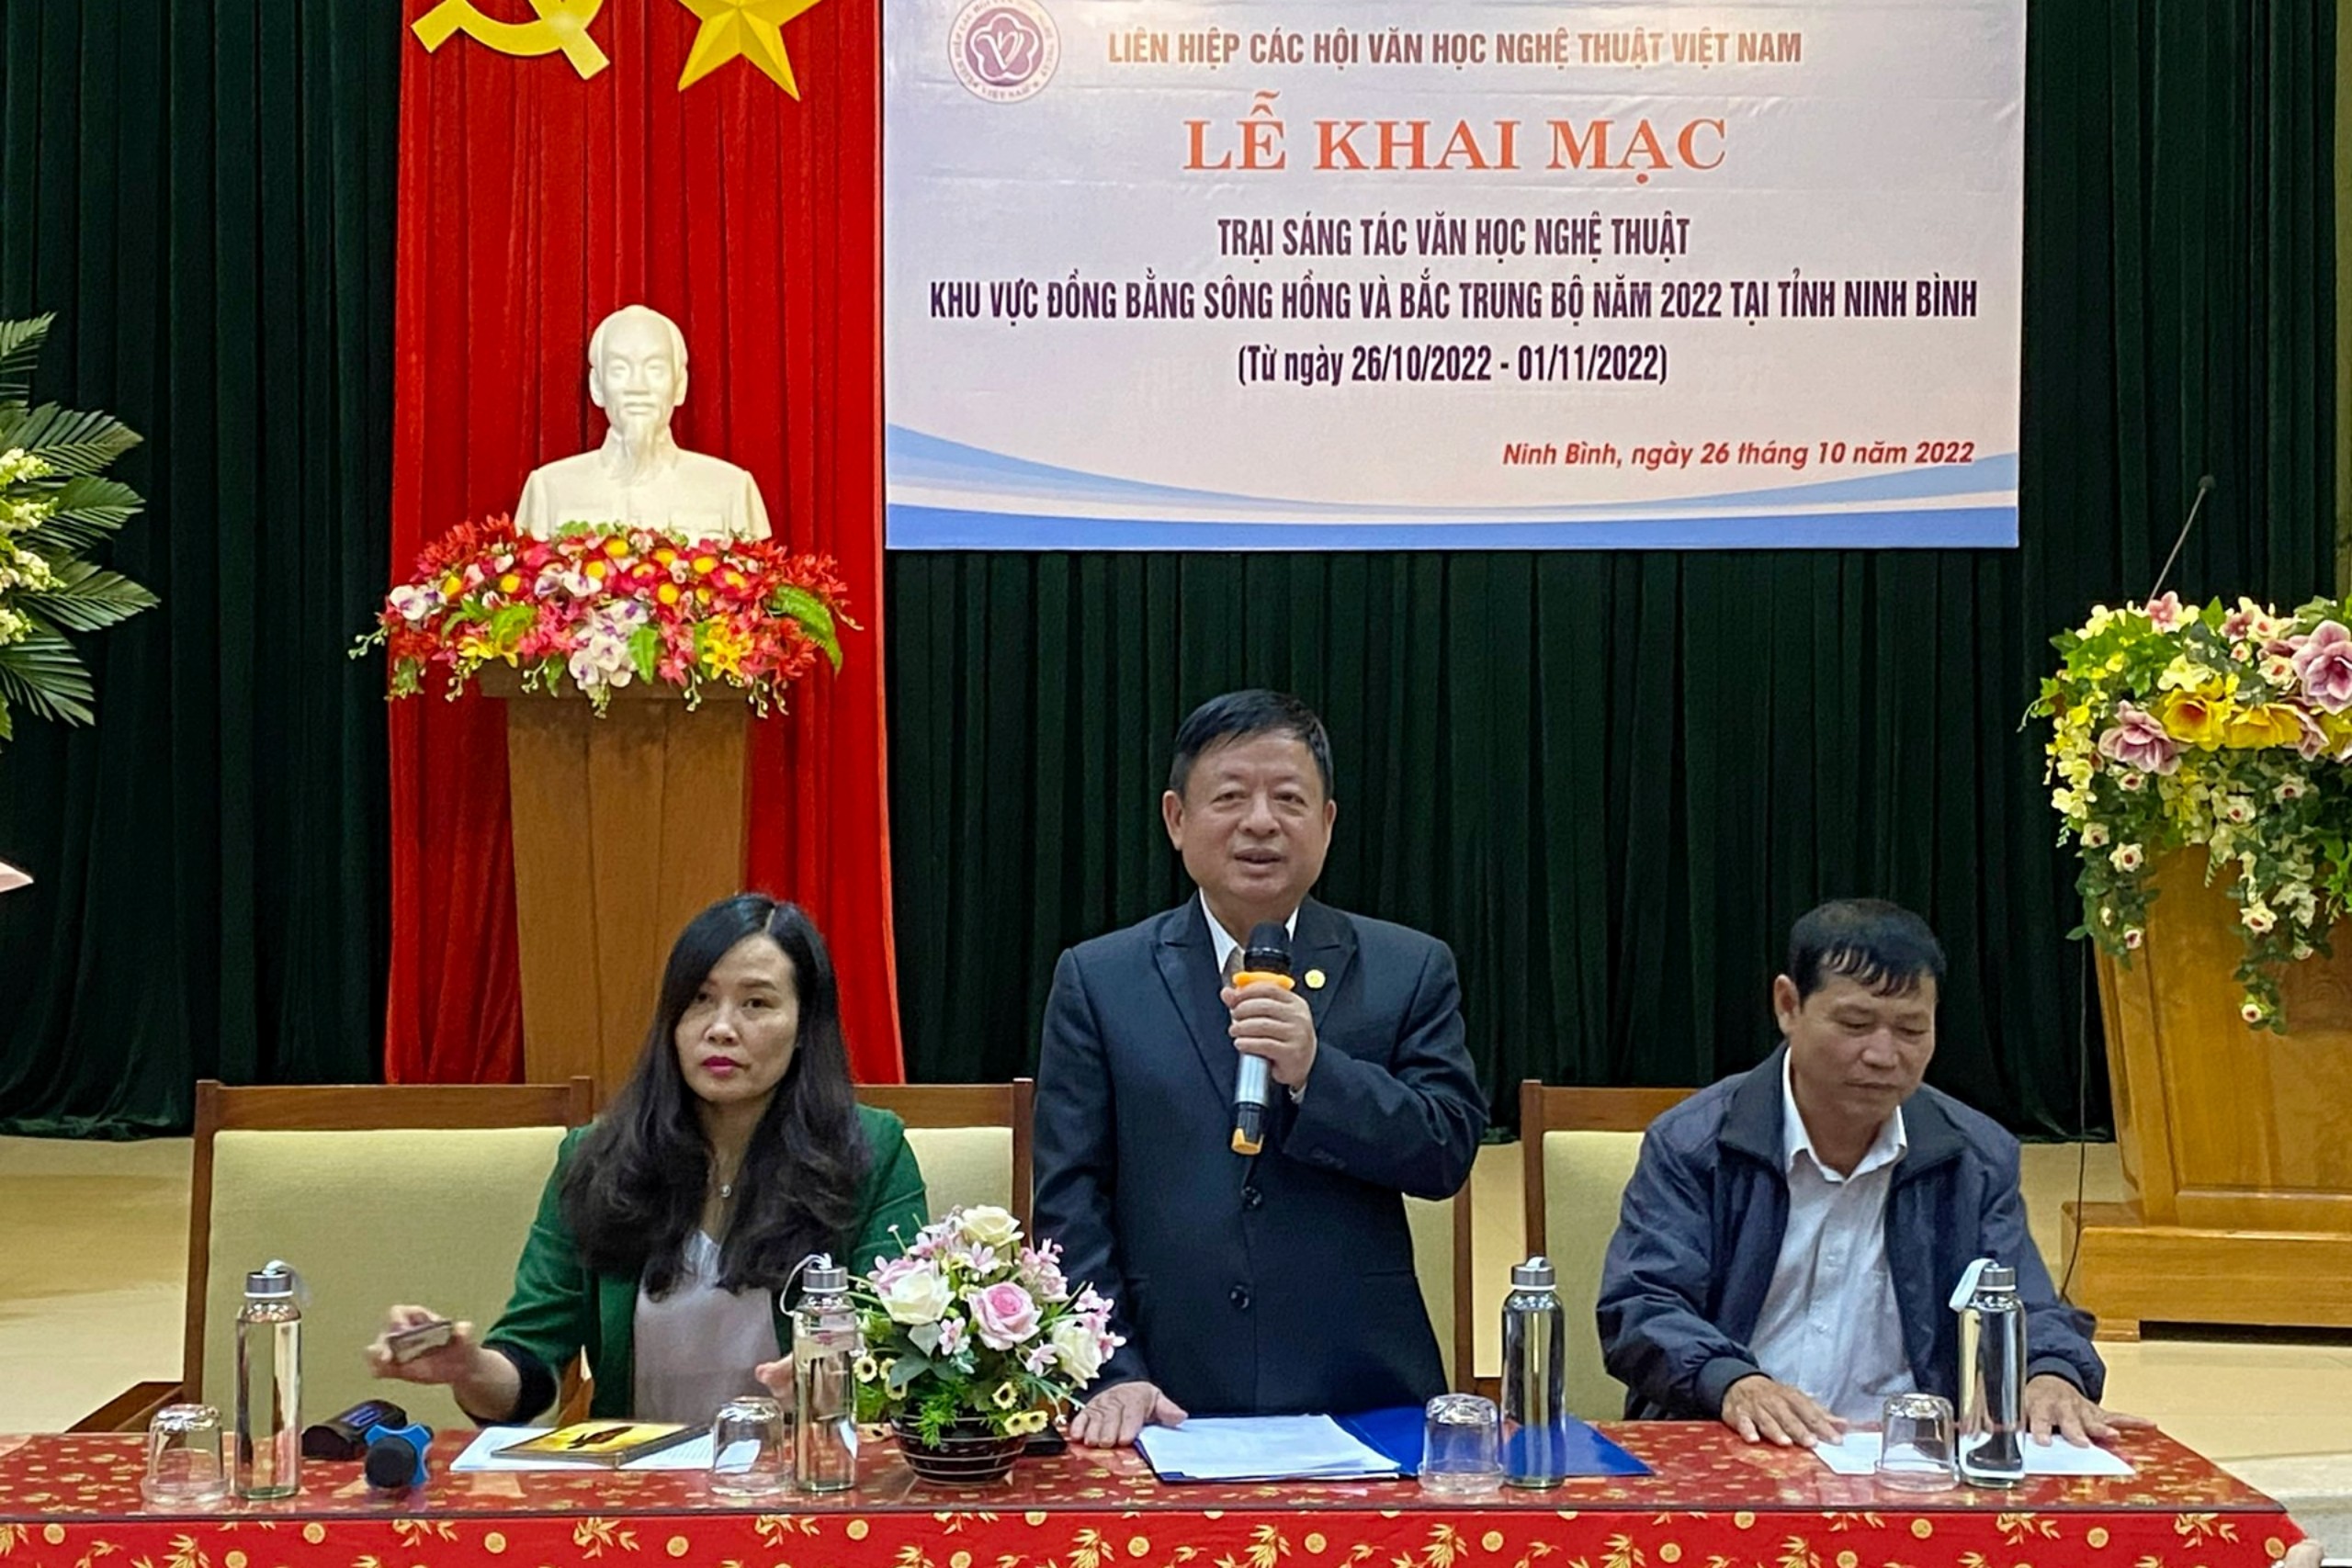 Lễ khai mạc Trại sáng tác tại Ninh Bình của Liên hiệp các Hội Văn học nghệ thuật Việt Nam - 2